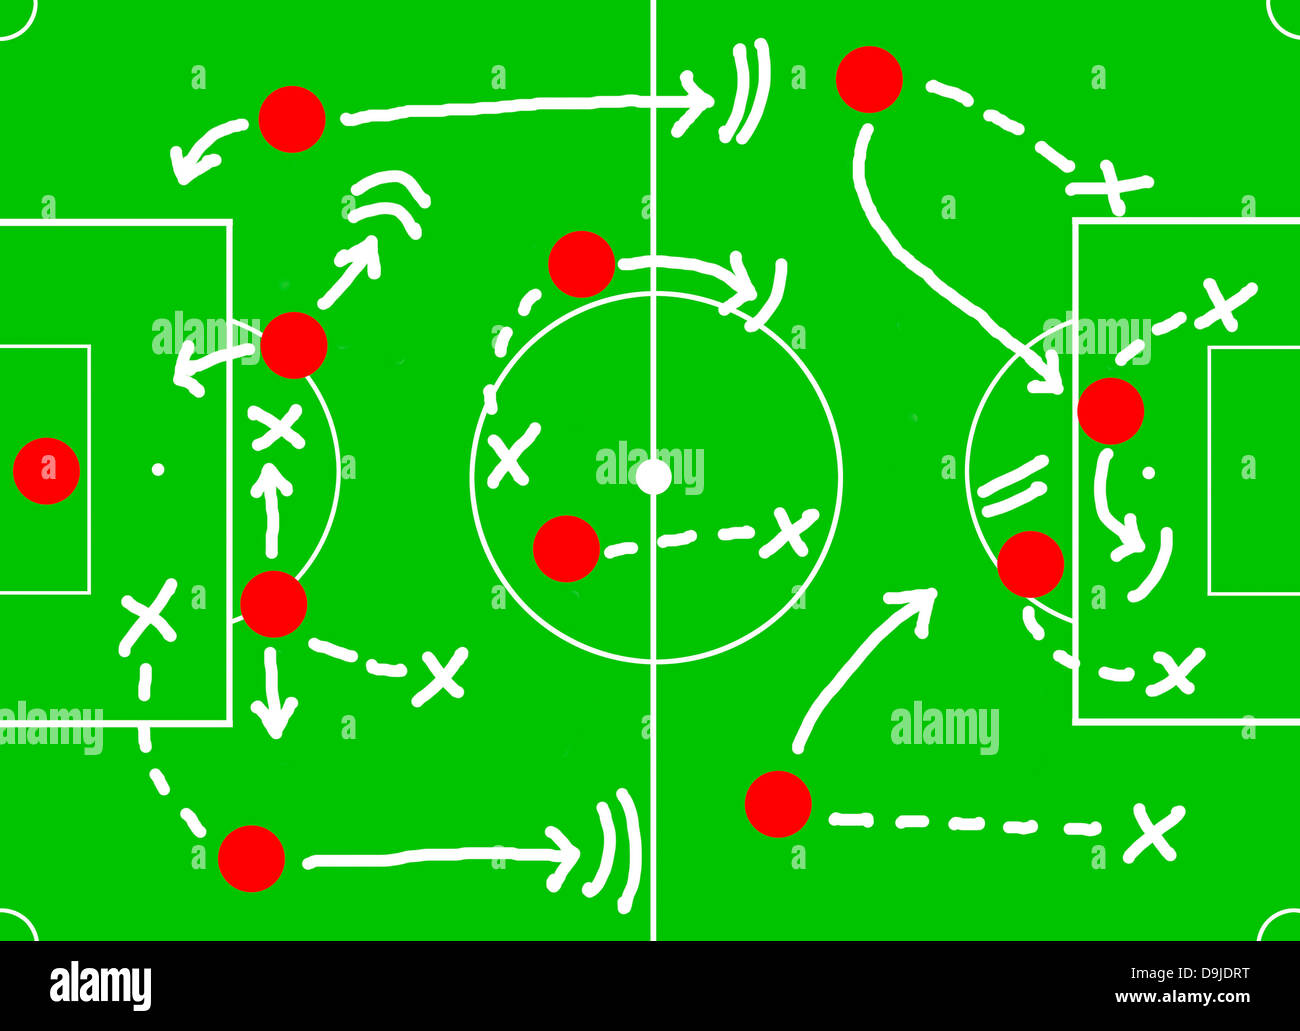 Strategia tattica del programma di calcio di calcio immagini e fotografie  stock ad alta risoluzione - Alamy